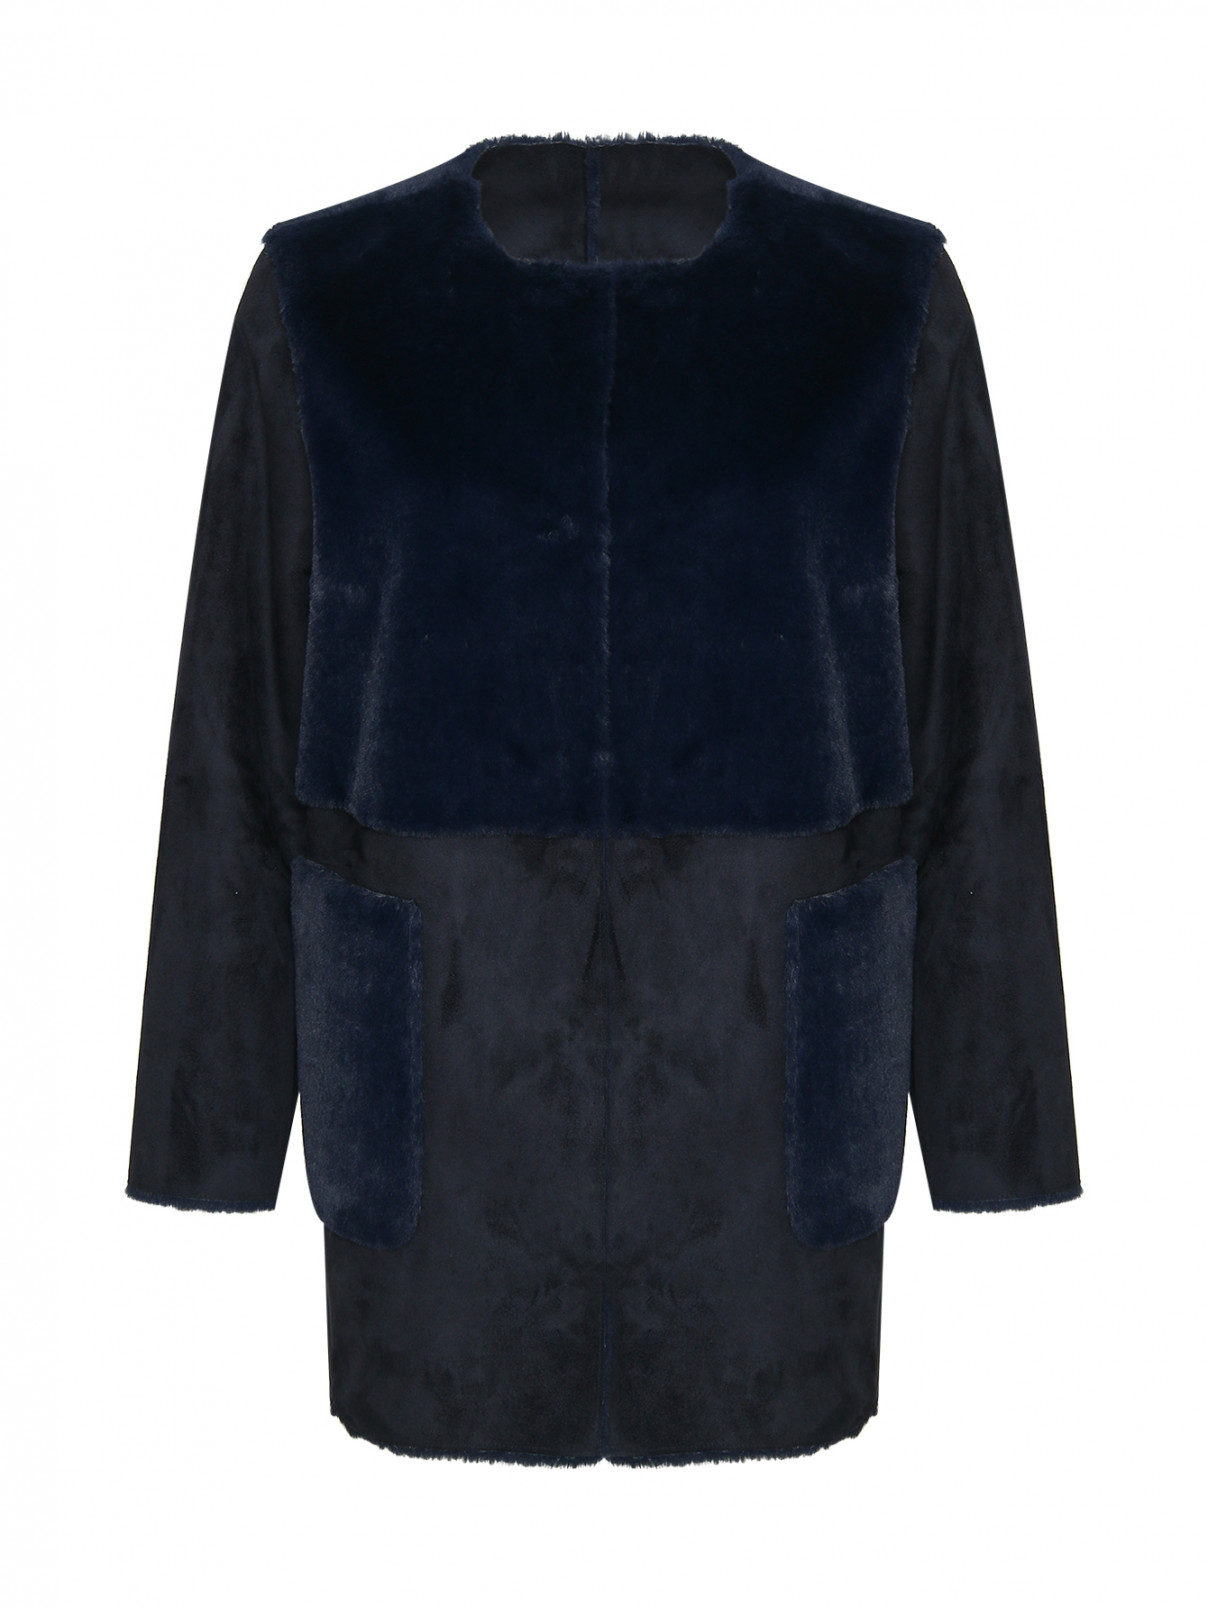 Пальто с накладными карманами Persona by Marina Rinaldi  –  Общий вид  – Цвет:  Синий